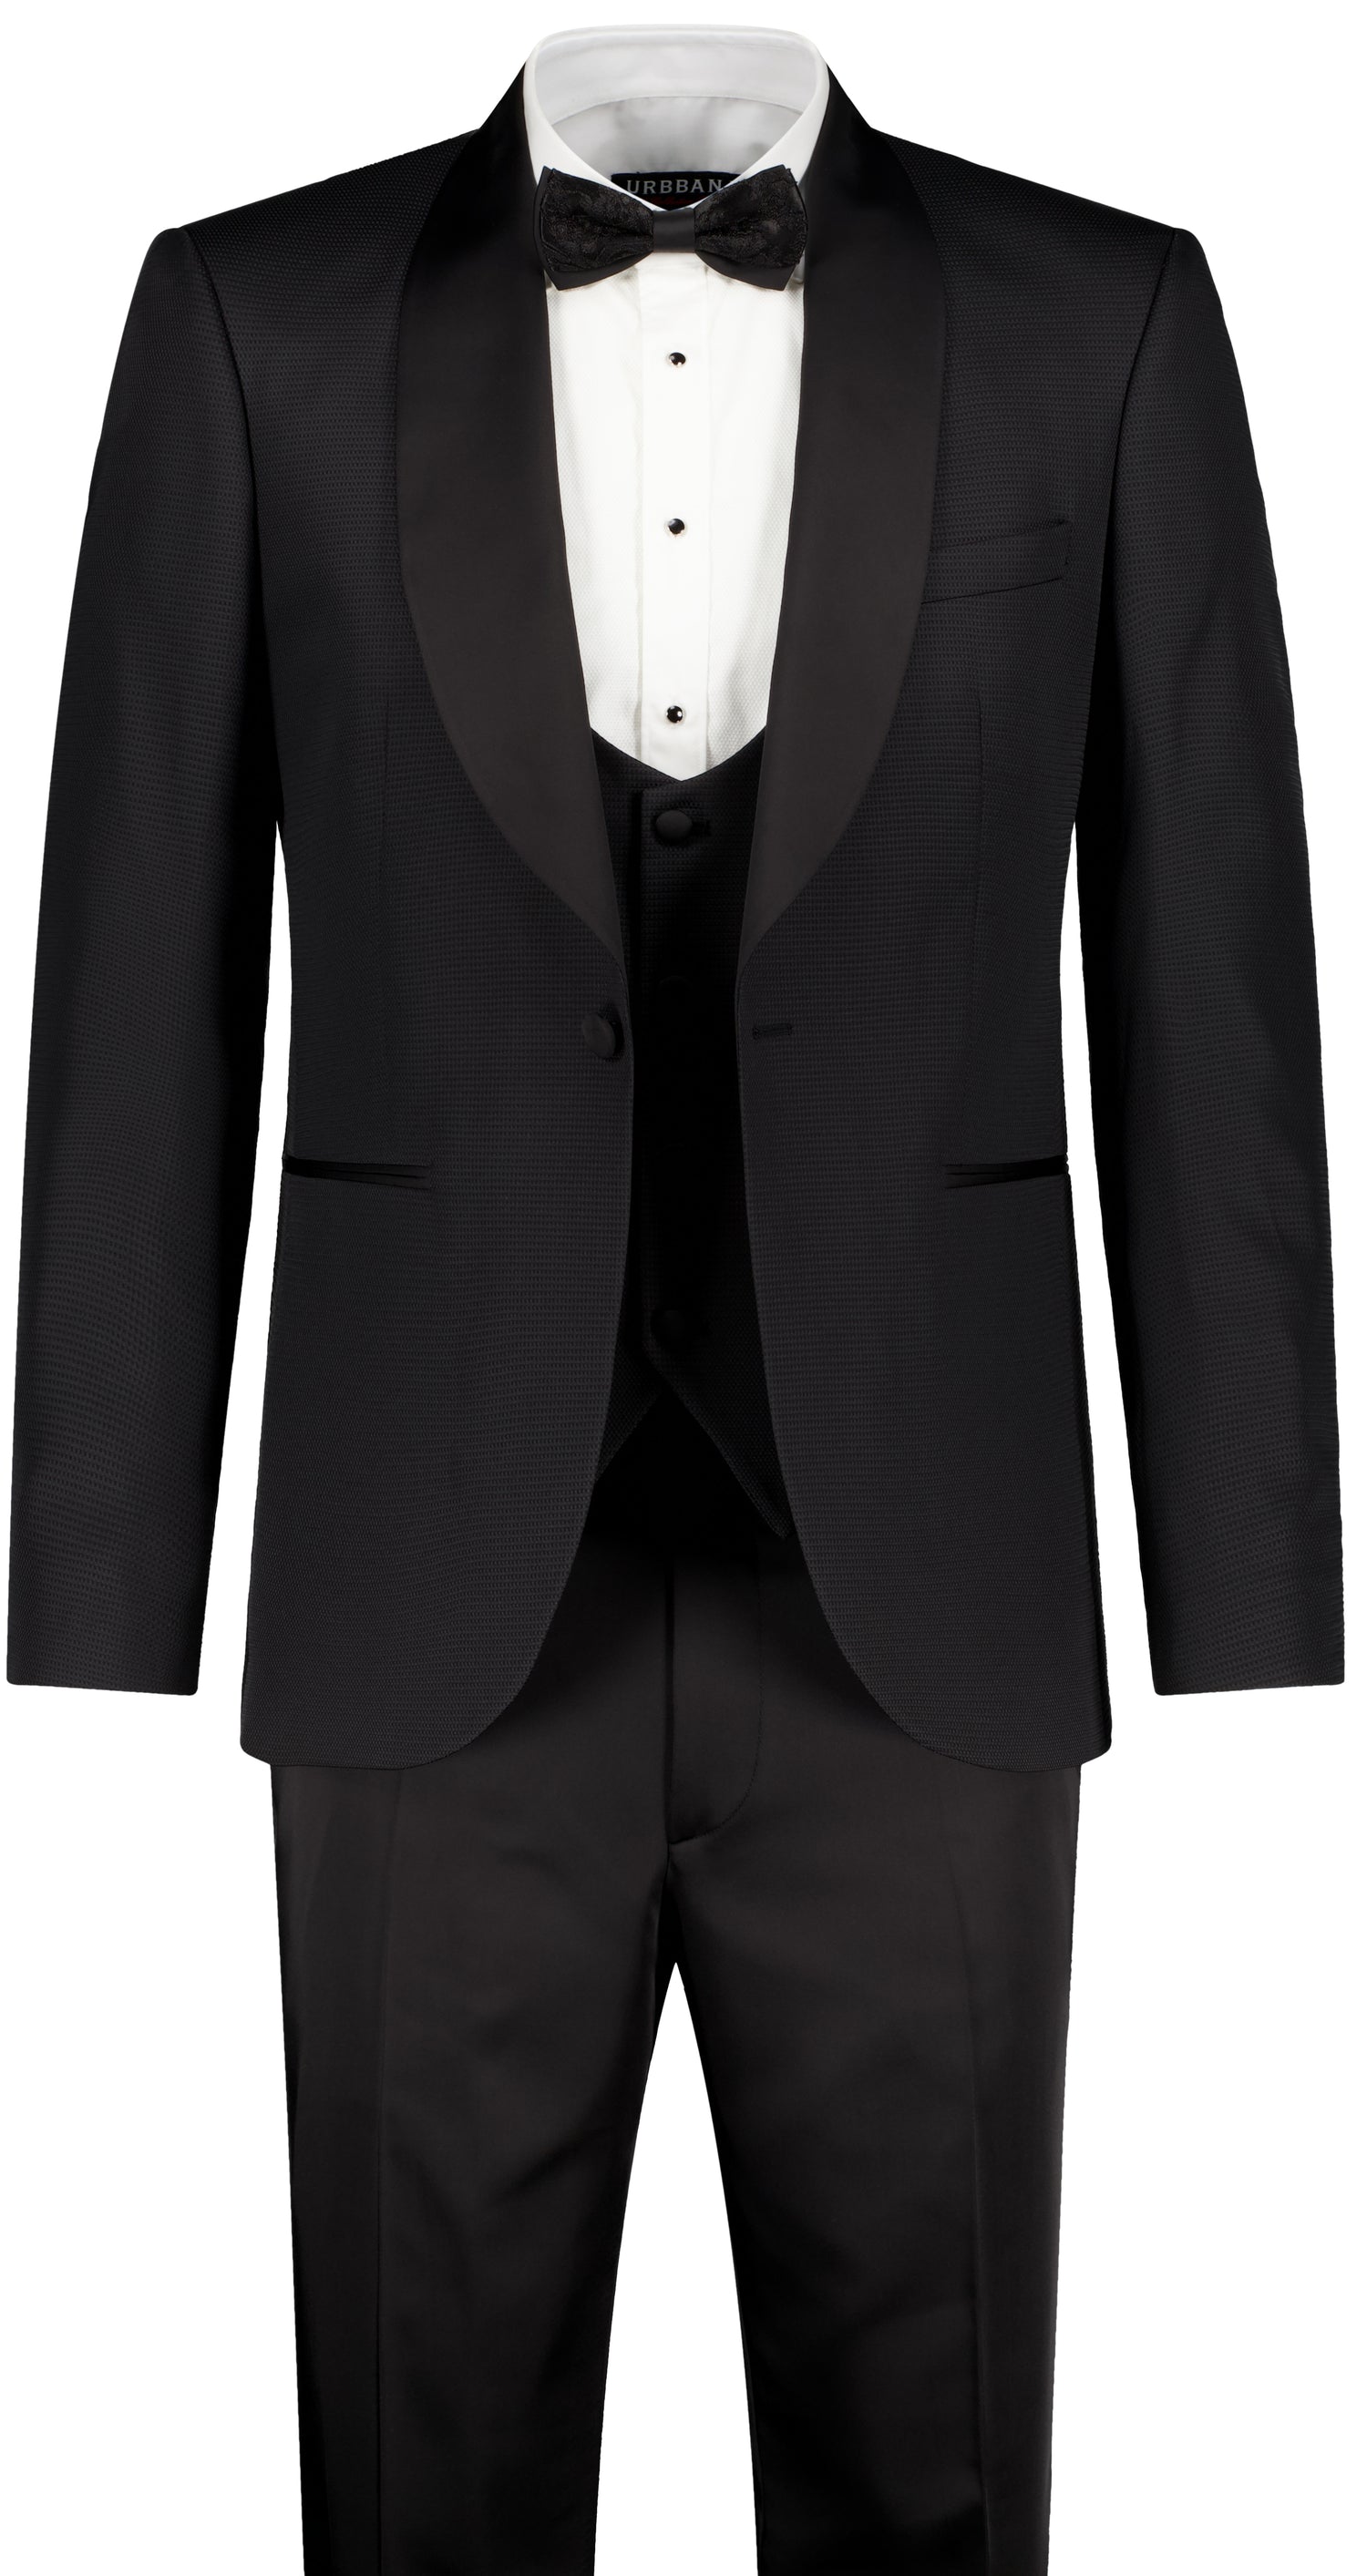 The Nunez Ceremony Suit - Suit by Urbbana